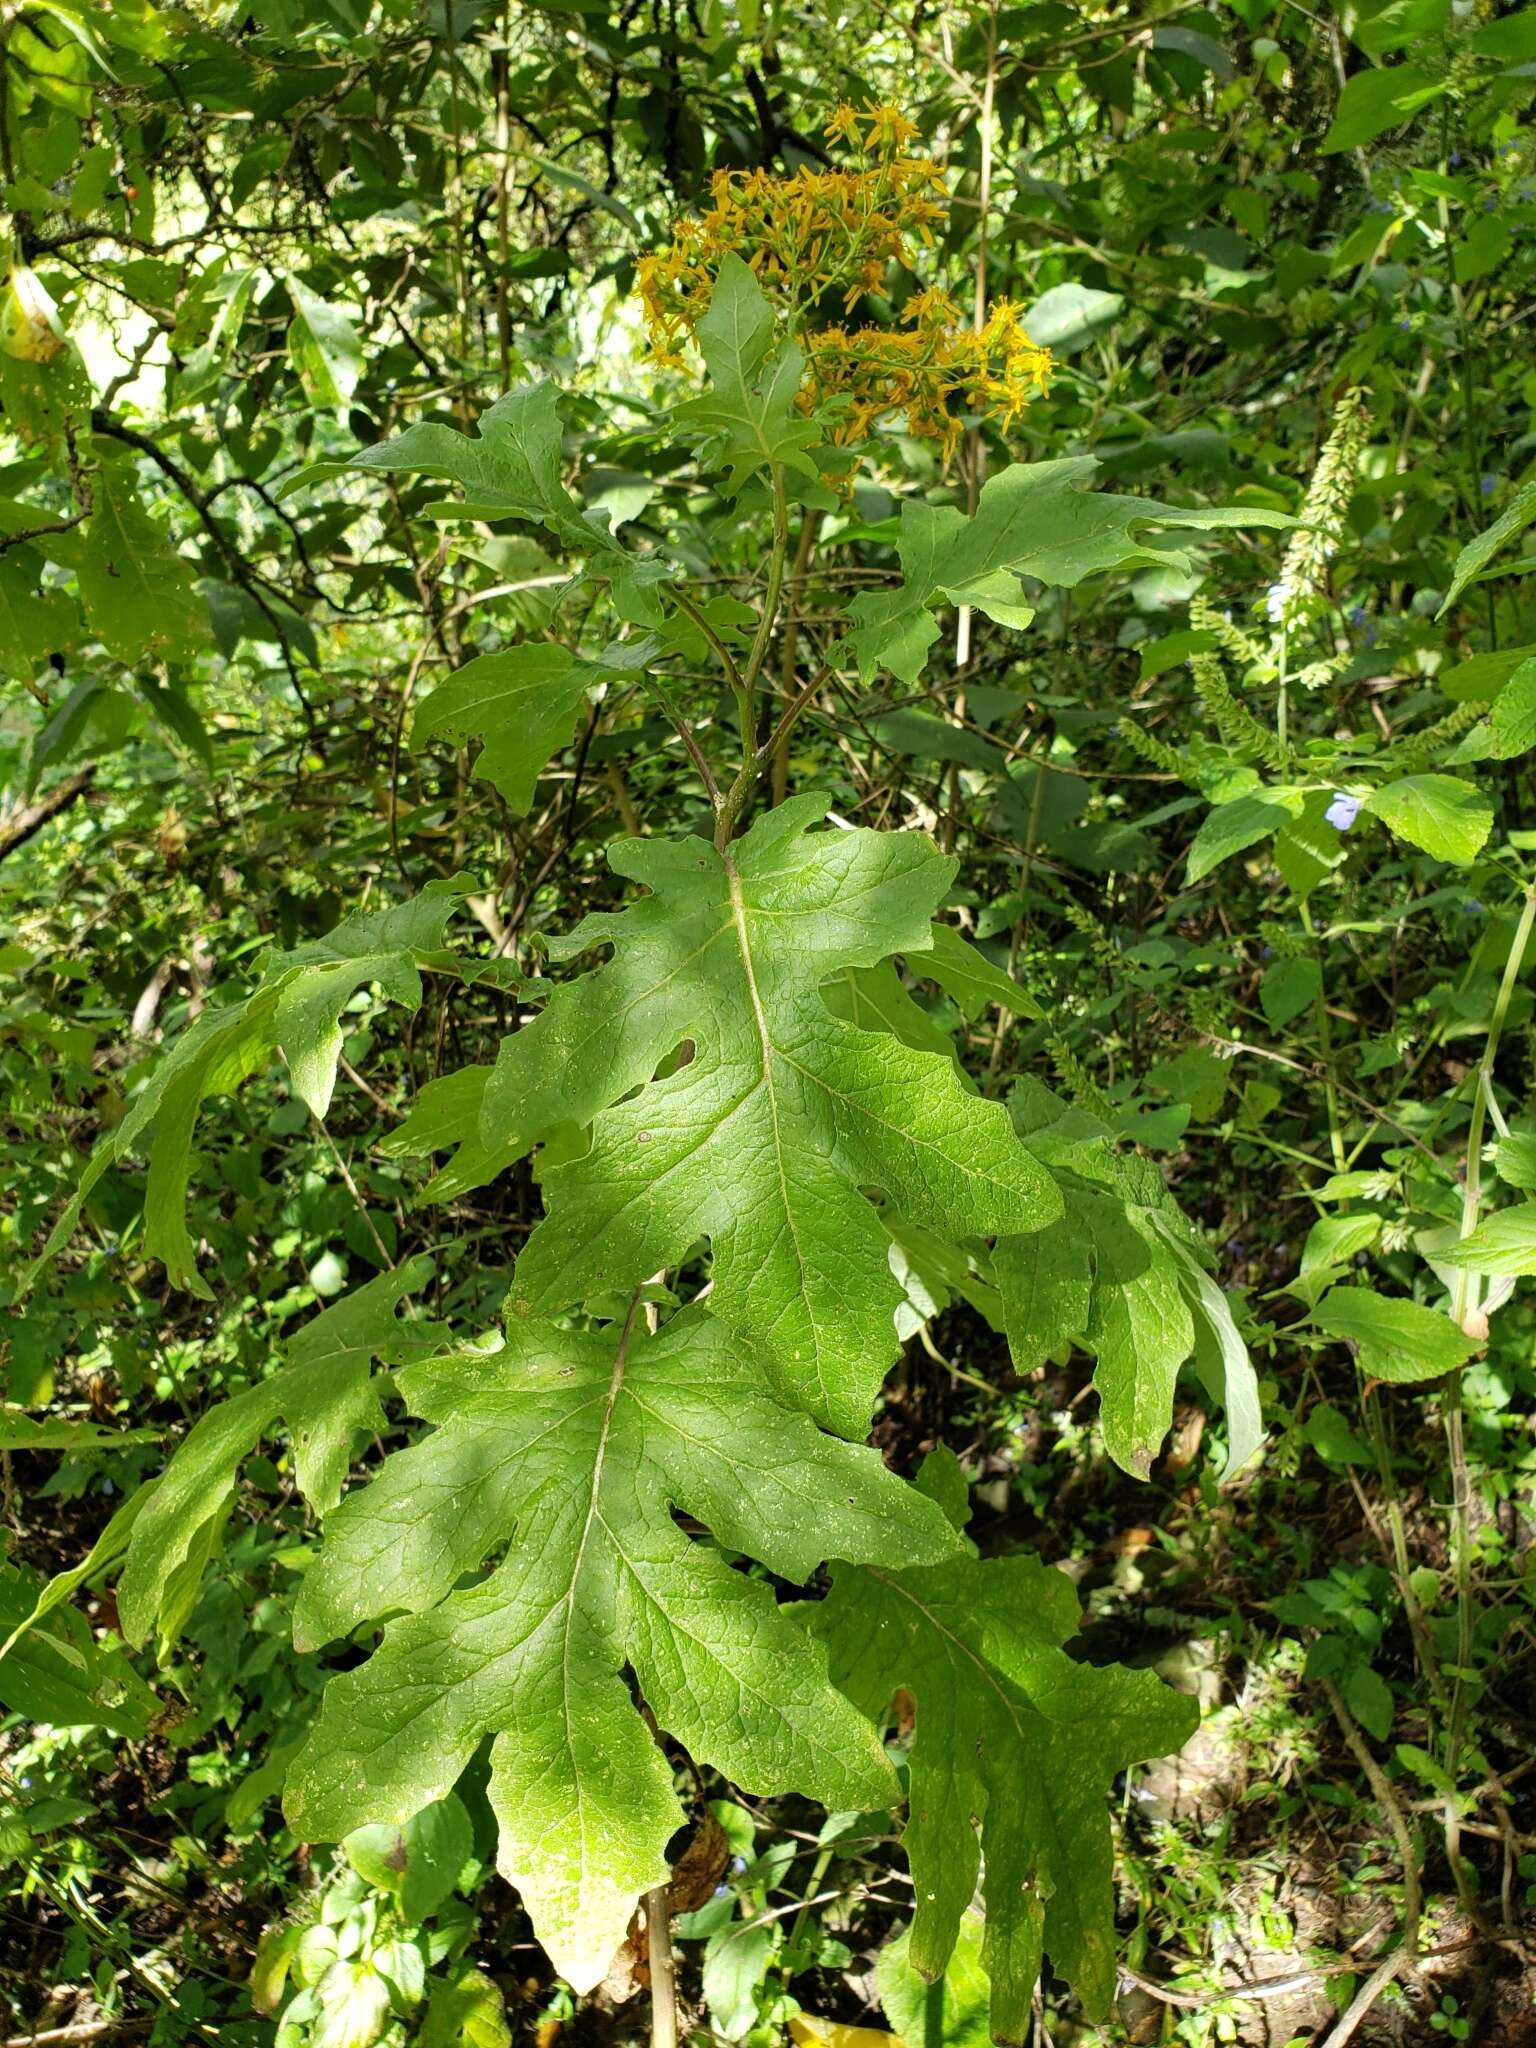 Image of Roldana heracleifolia (Hemsl) H. Rob. & Brettell